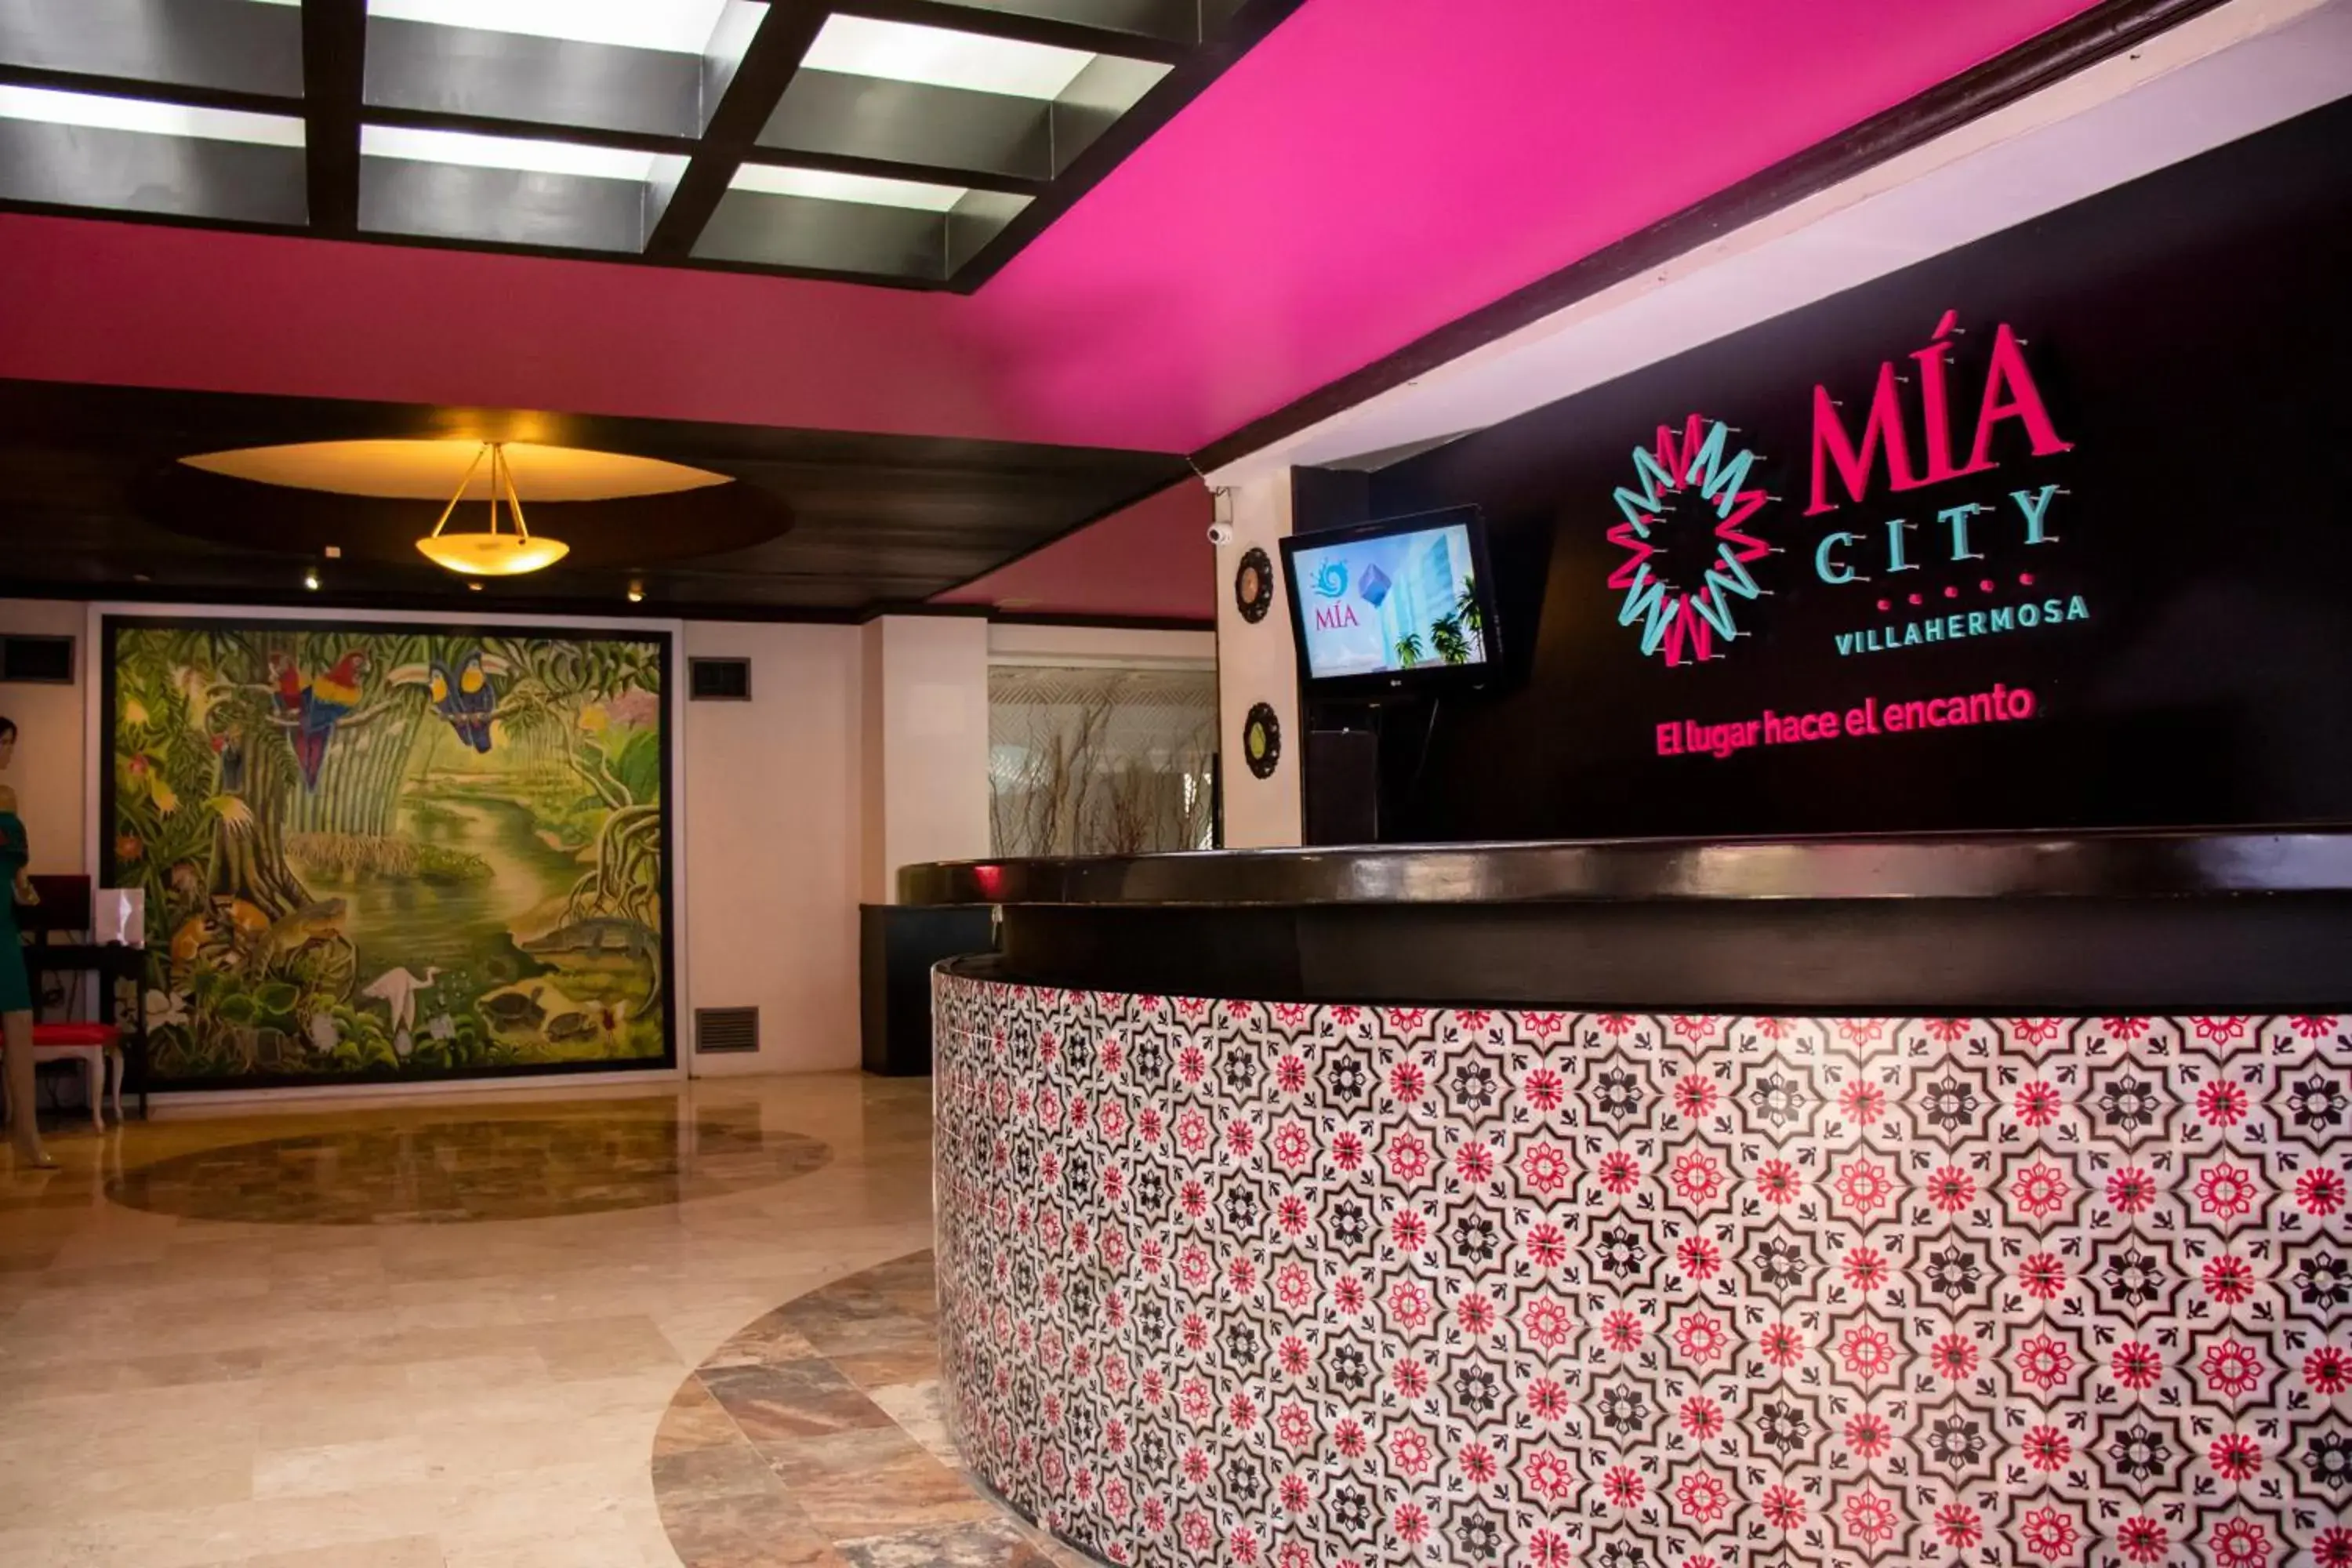 Lobby or reception, Lobby/Reception in Mia City Villahermosa